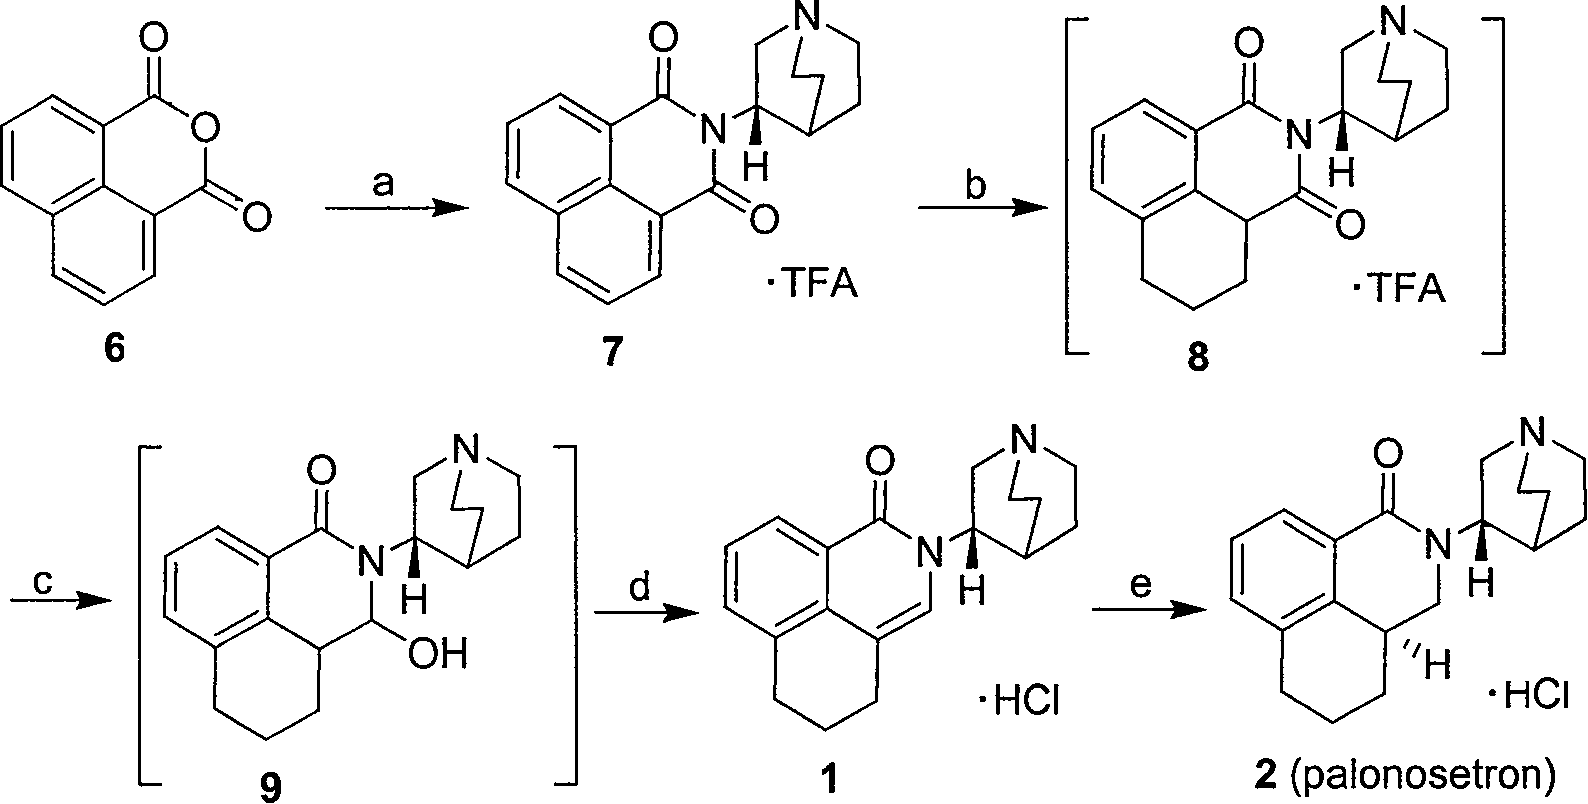 Method for synthesizing palonosetron hydrochloride